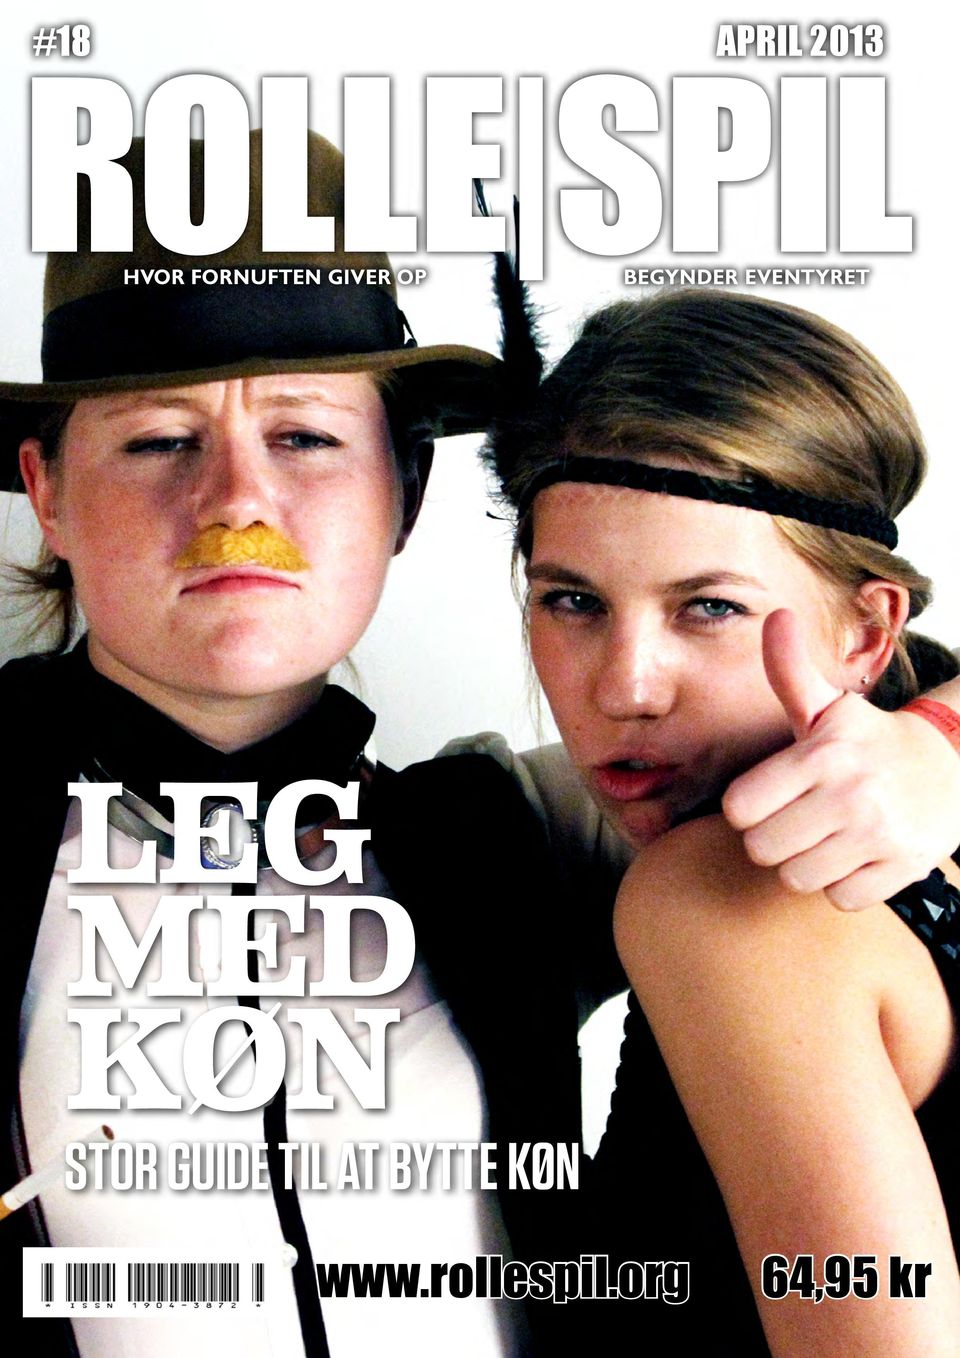 18 APRIL 2013 LEG MED KØN. STOR GUIDE TIL bytte køn - PDF Free Download